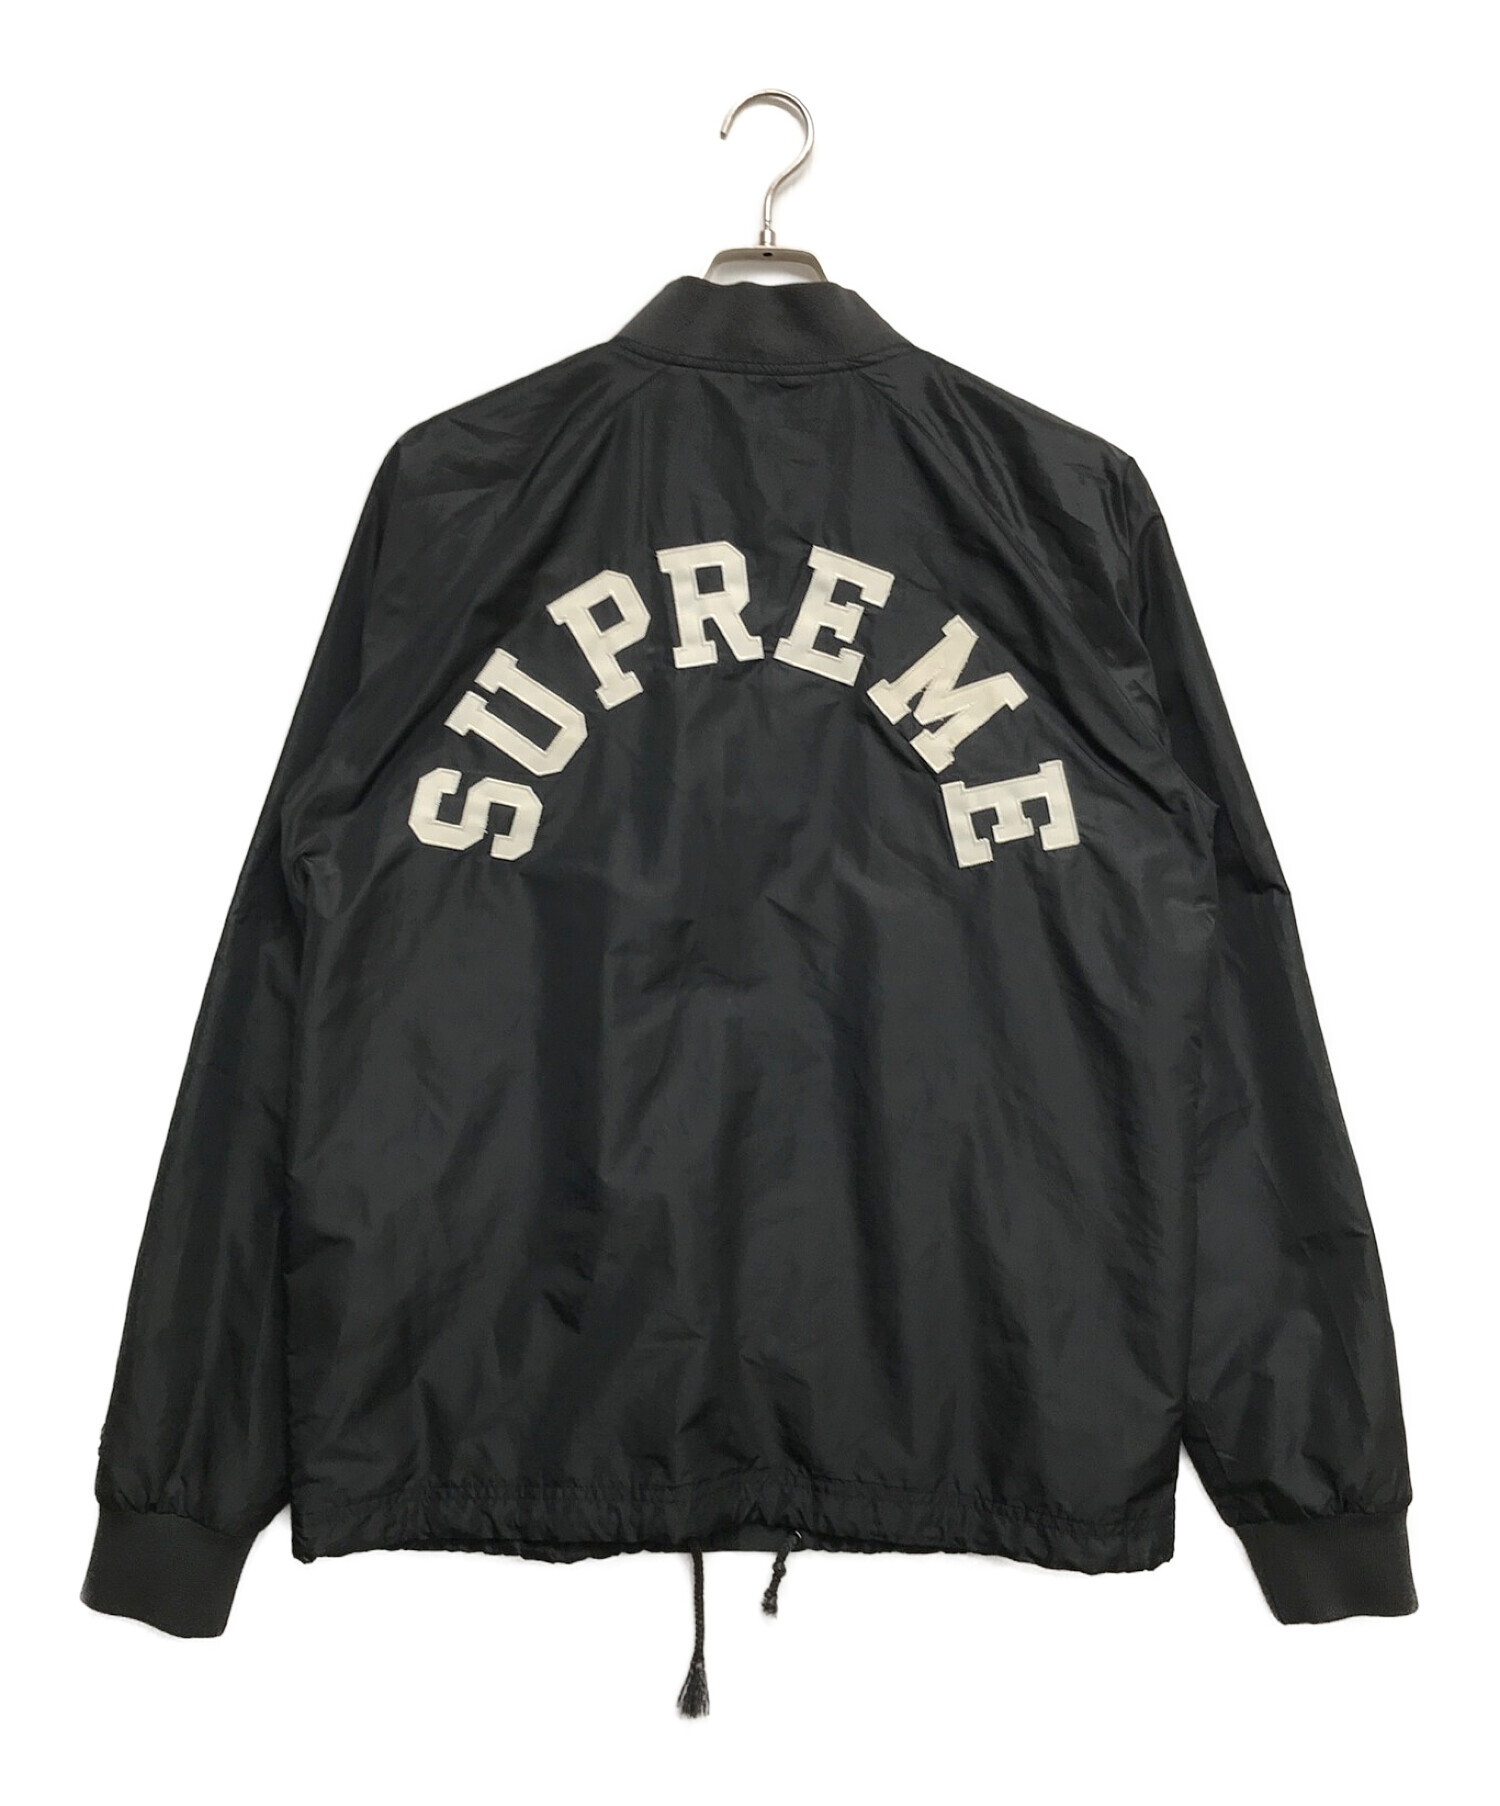 Champion (チャンピオン) Supreme (シュプリーム) Custom Coaches Jacket / バックアーチロゴコーチジャケット  ブラック サイズ:M